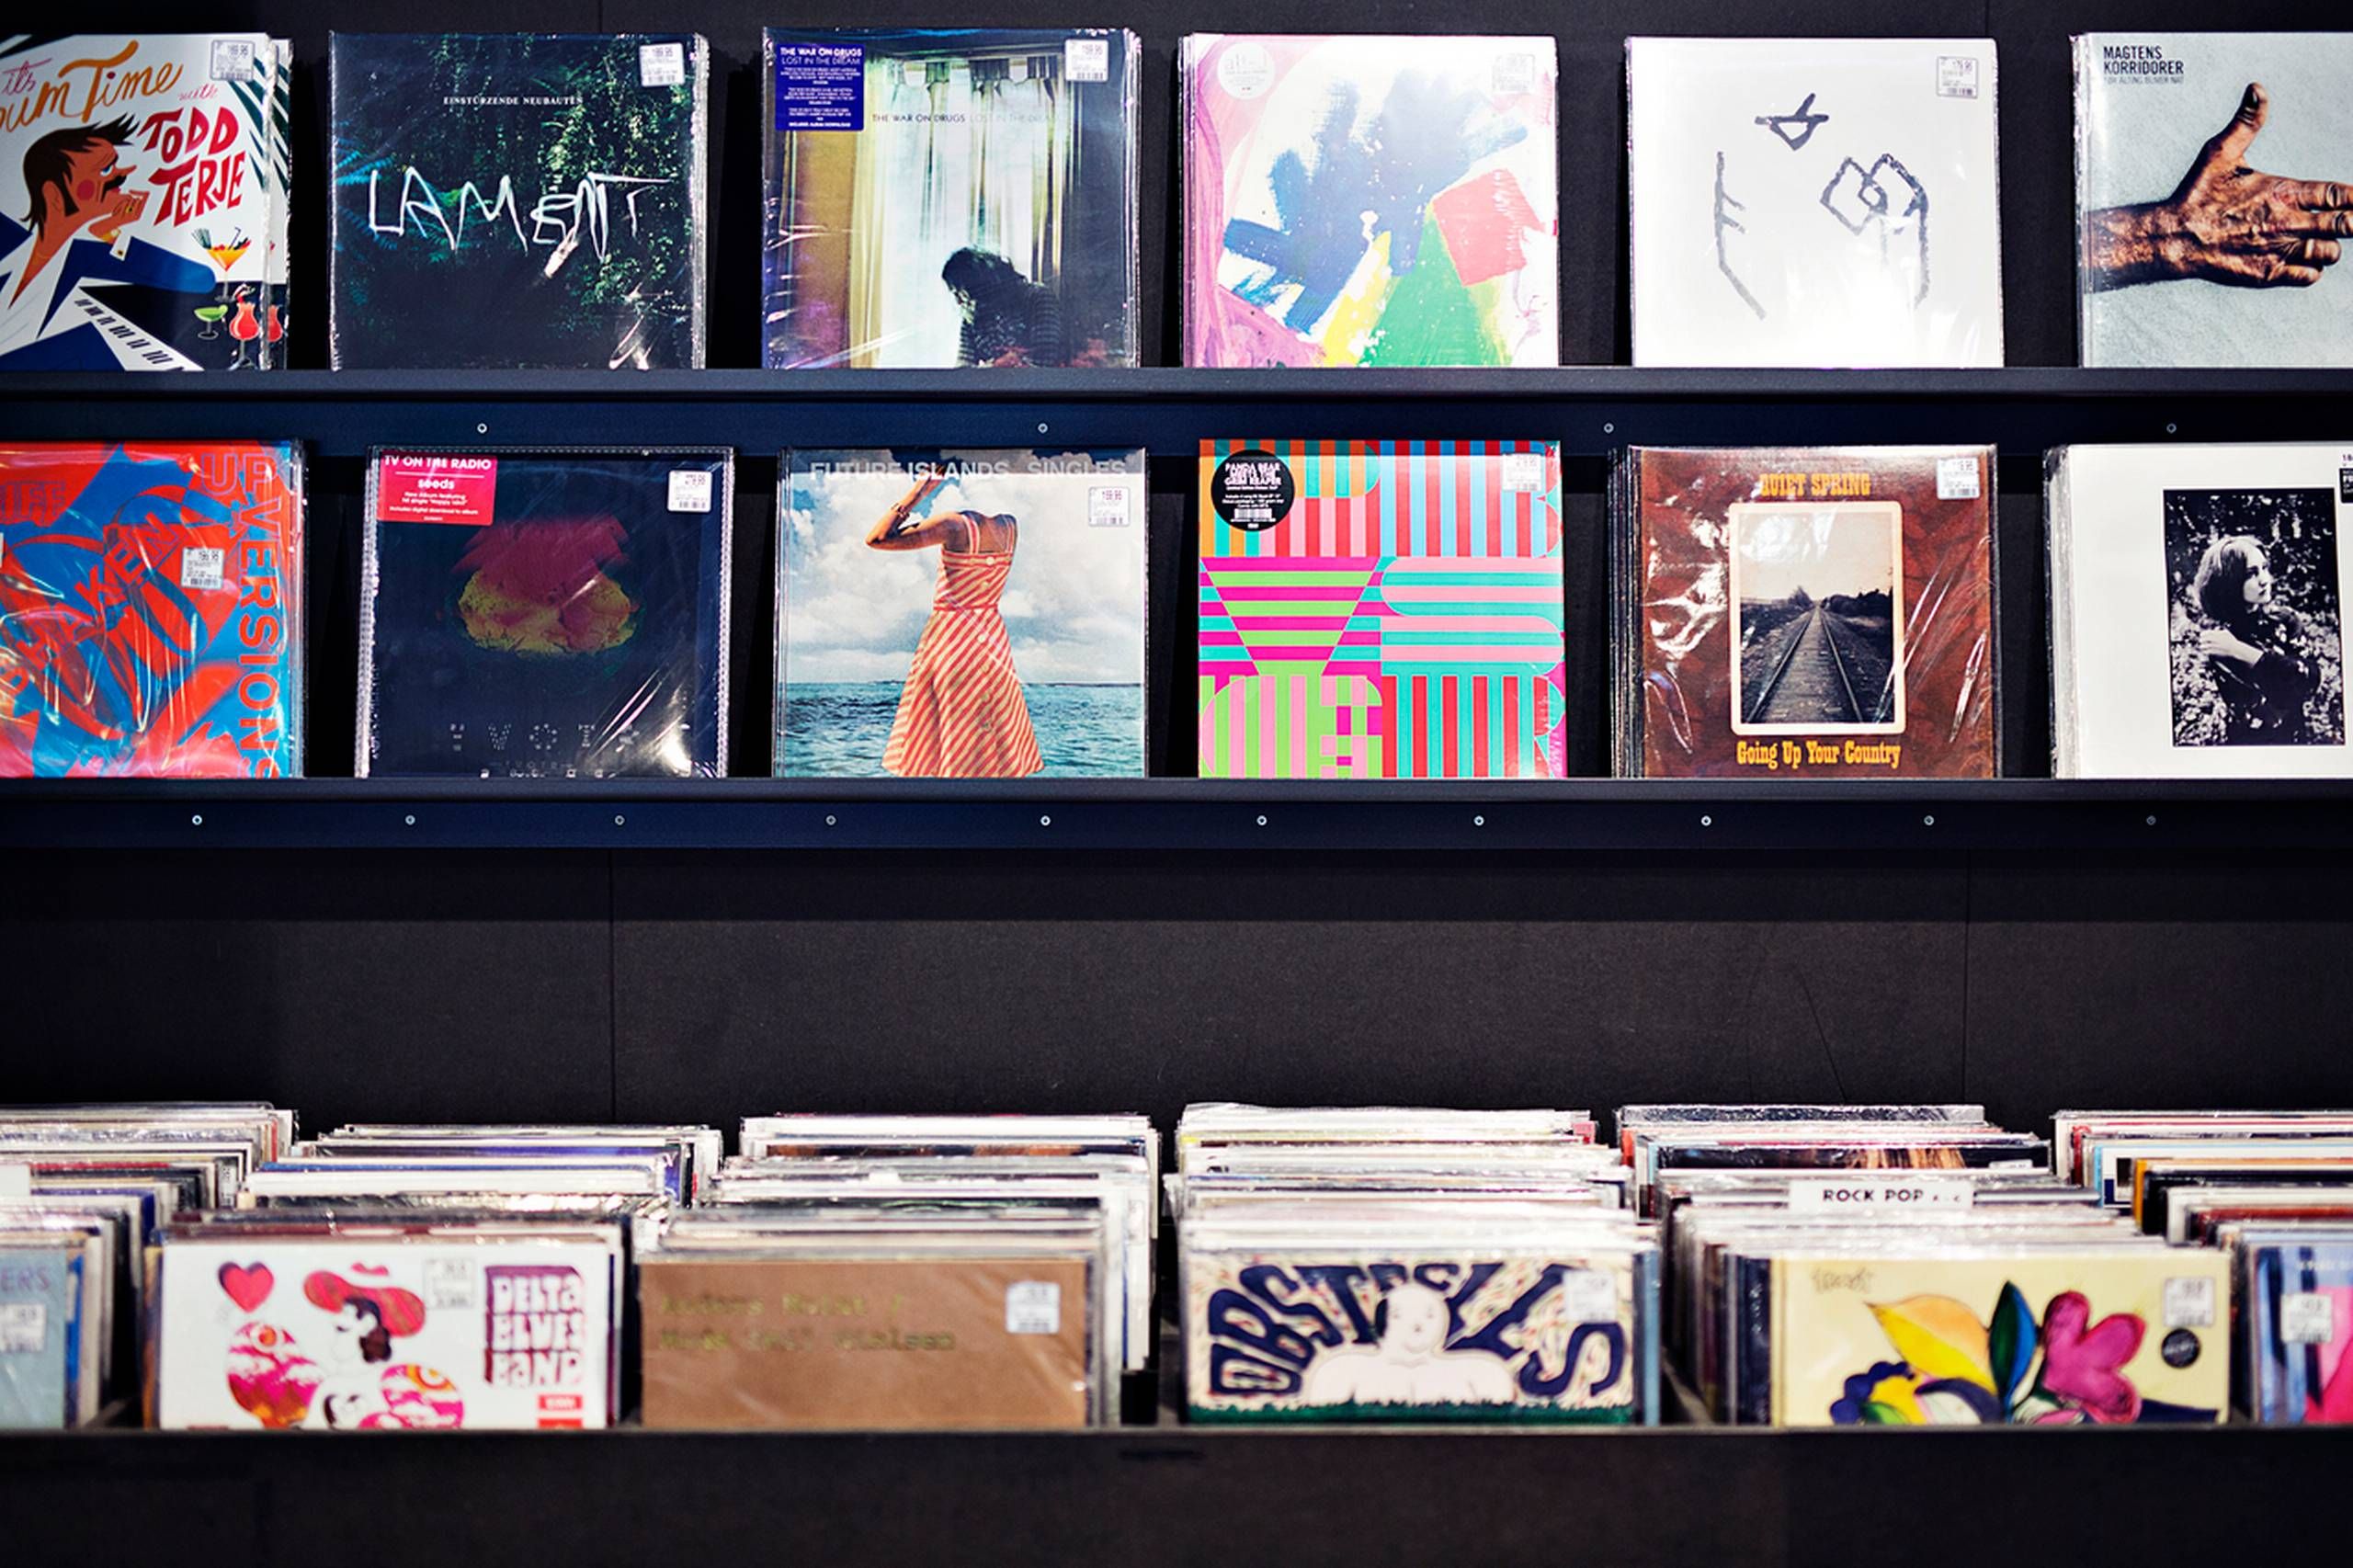 Tilbage til fortiden: Efter 30 pause vil Sony trykke vinylplader